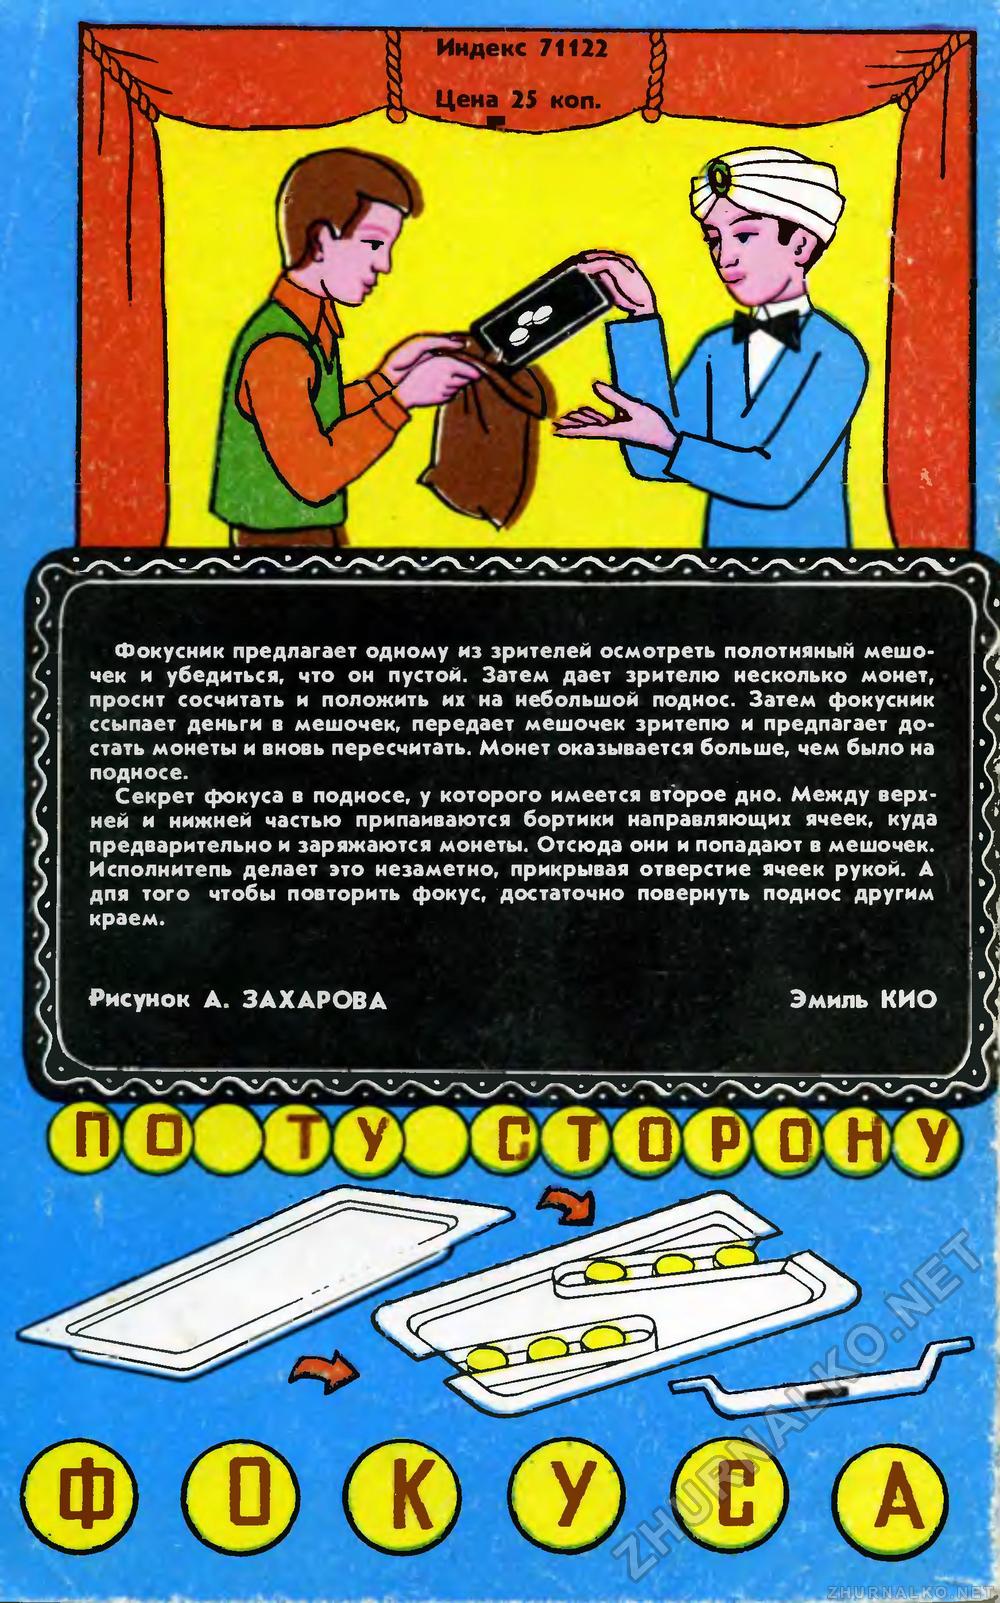   1986-07,  86